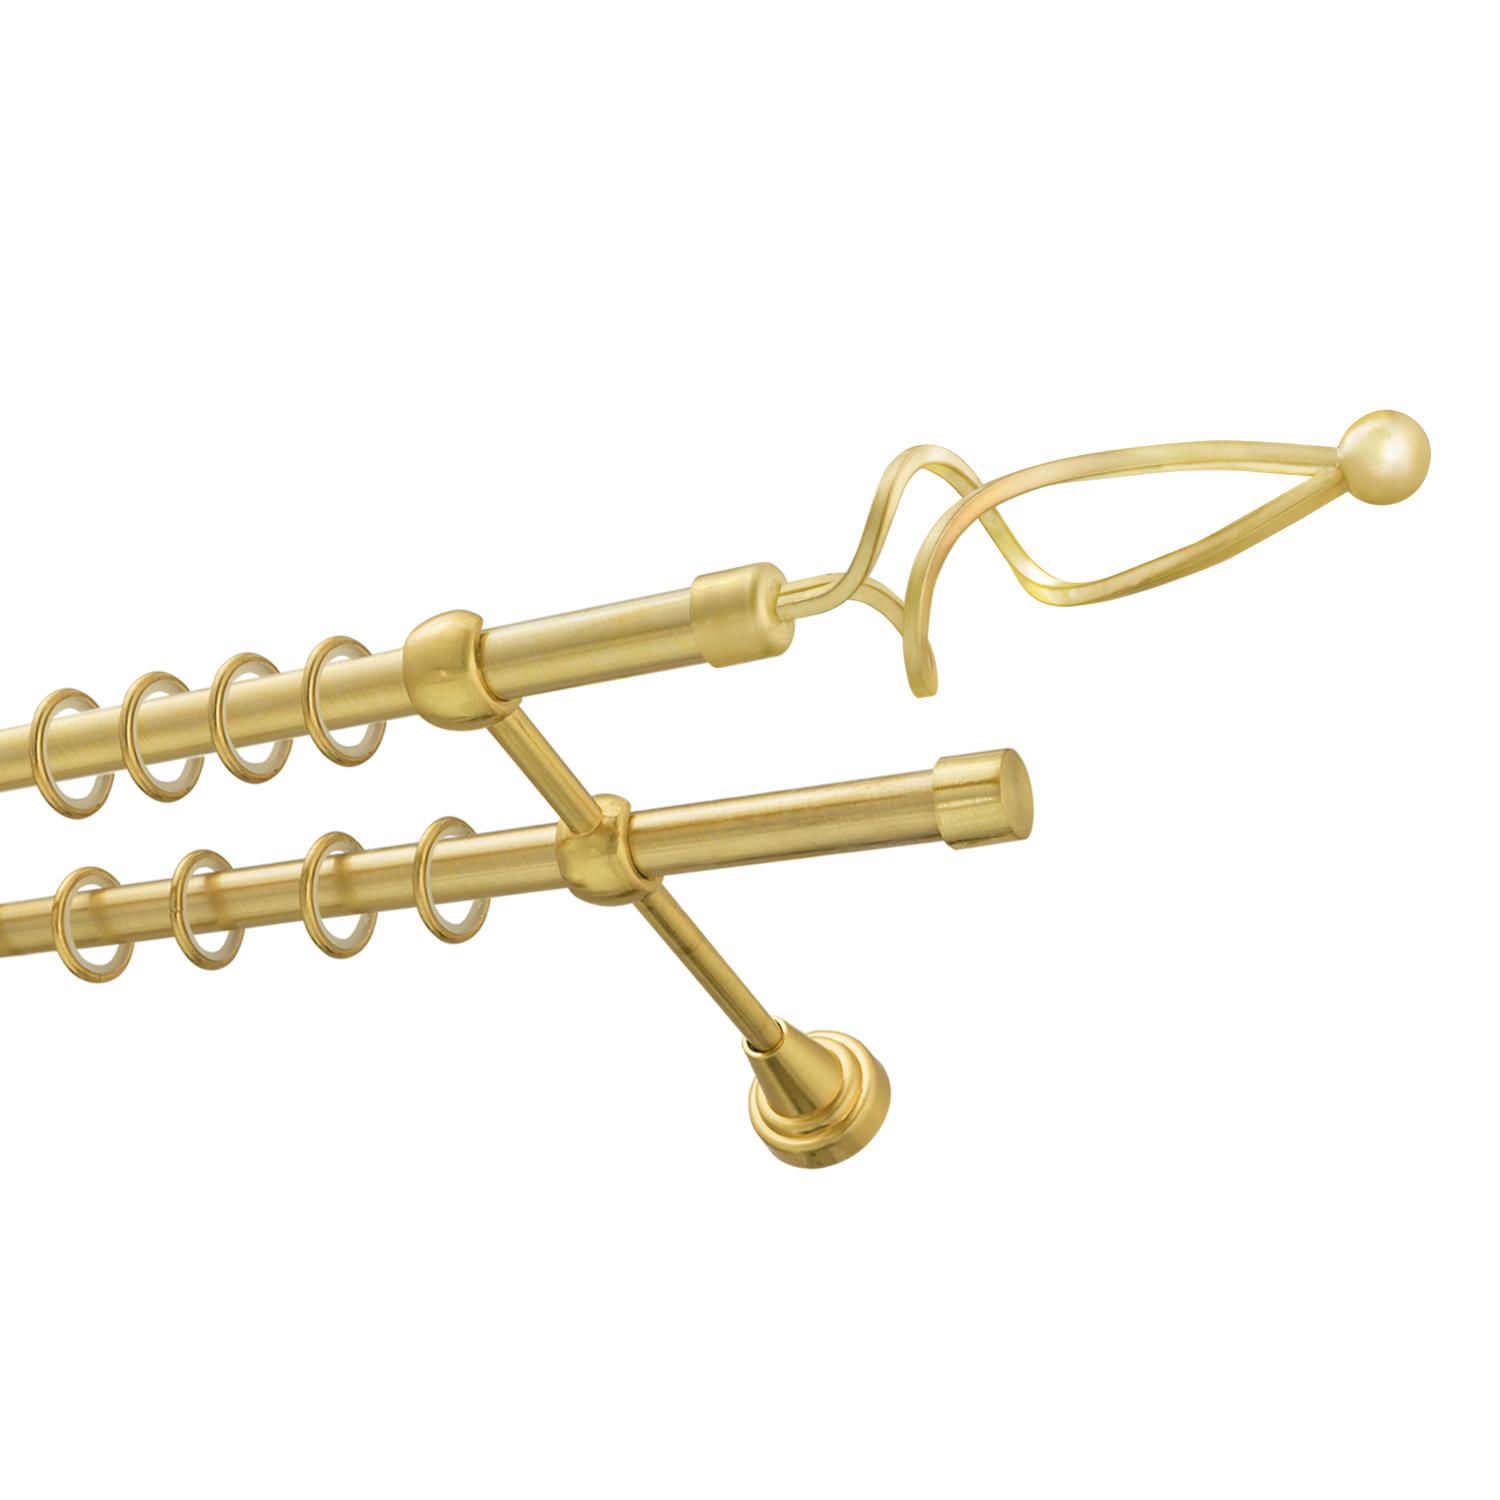 Металлический карниз для штор Жемчужина, двухрядный 16/16 мм, золото, гладкая штанга, длина 180 см - фото Wikidecor.ru